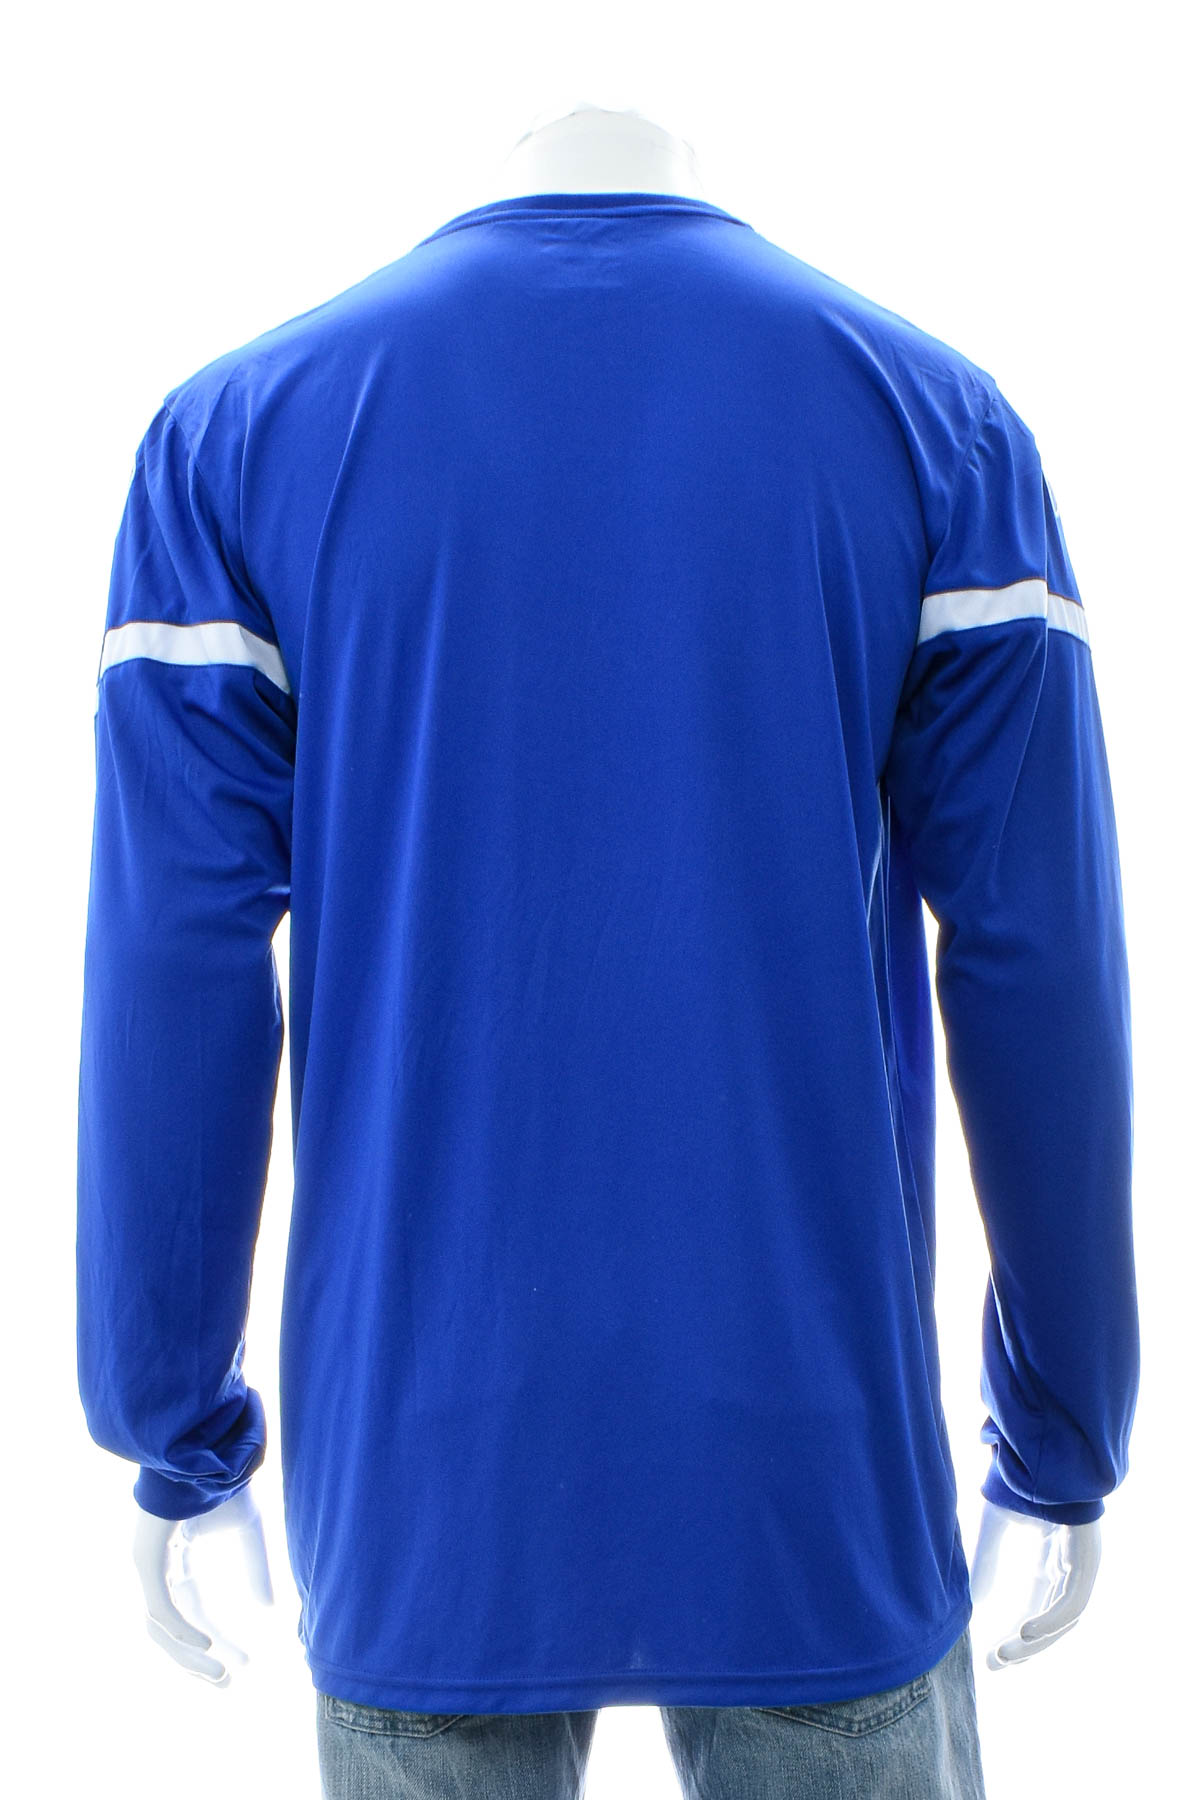 Ανδρική μπλούζα - Uhlsport - 1